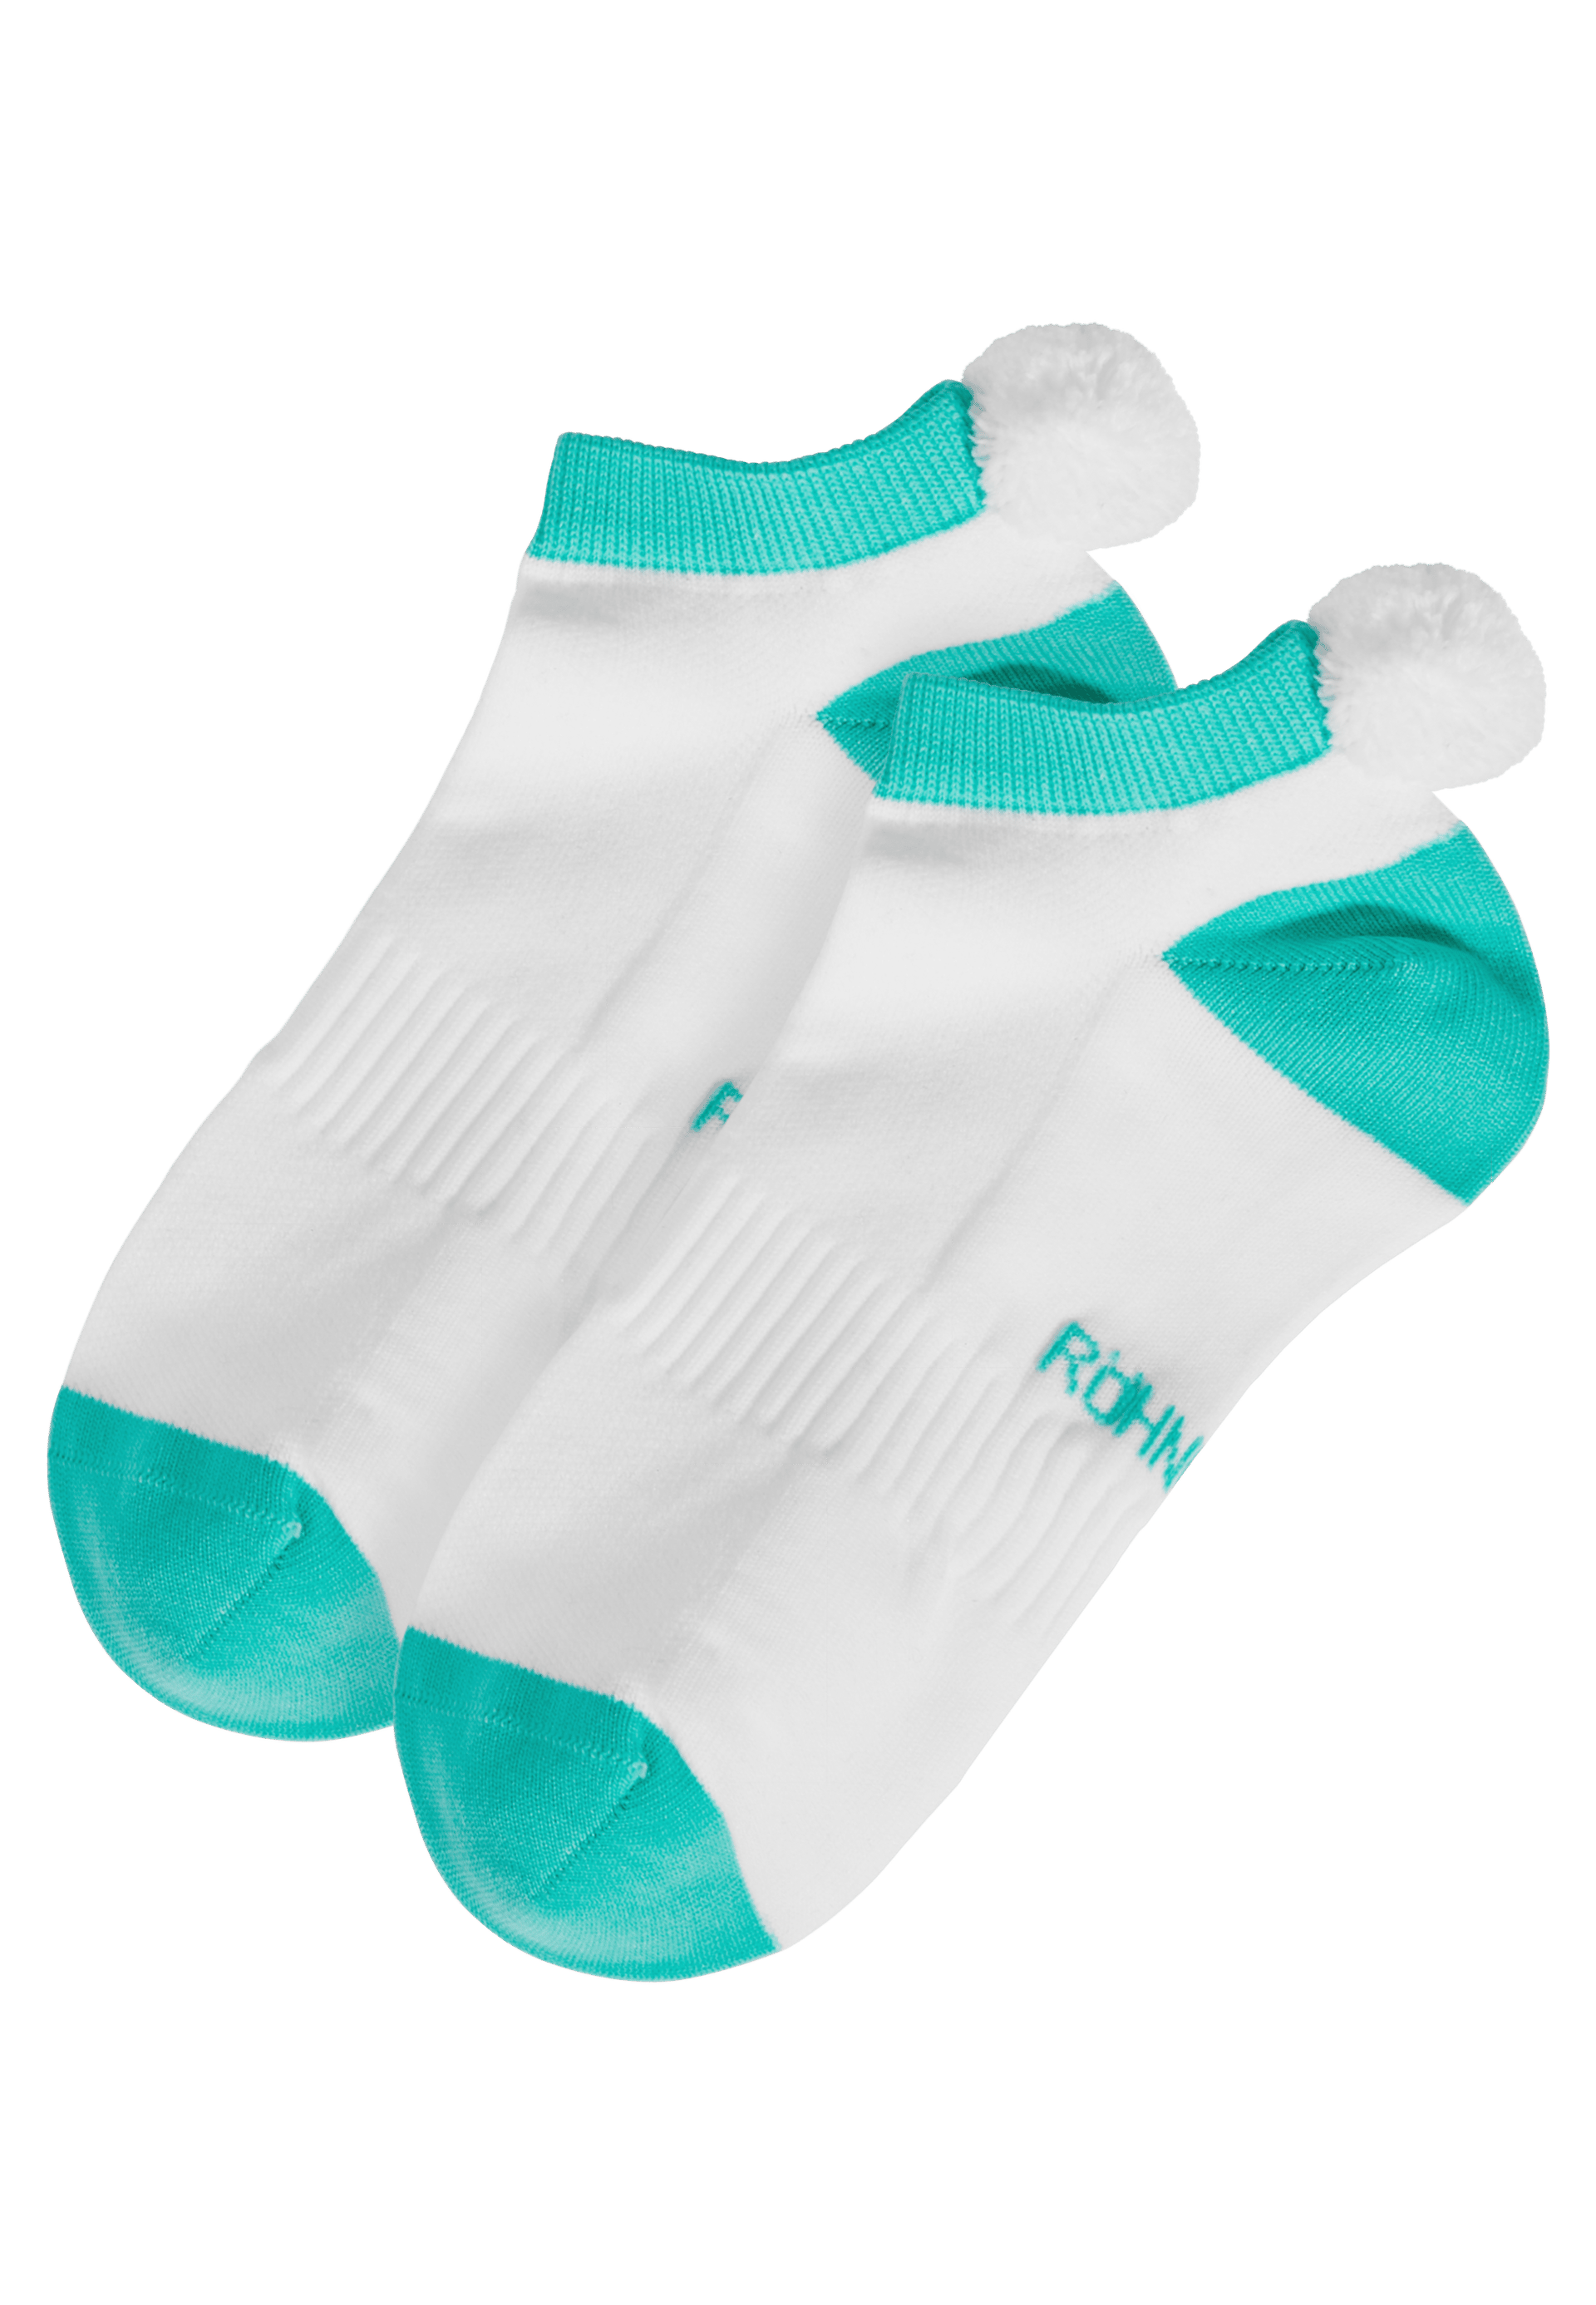 Brug Röhnisch 2-pak Funktional Pompom Socks - 4 farver til en forbedret oplevelse